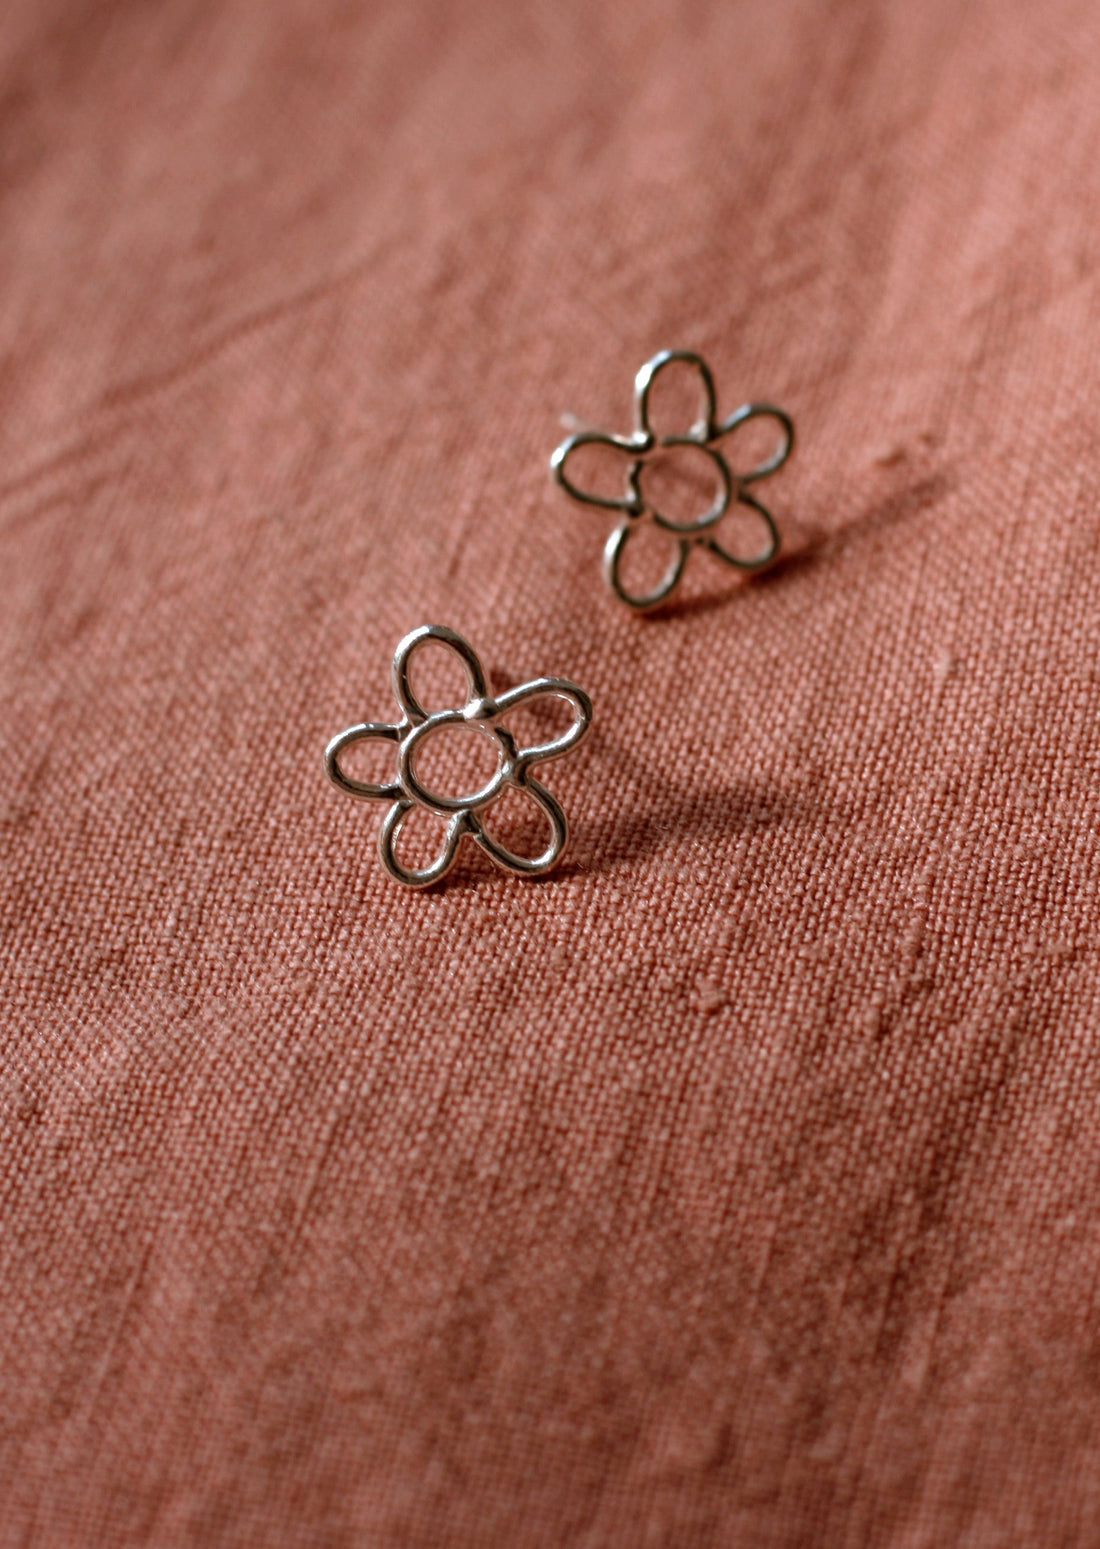 Flower earrings by Marmo